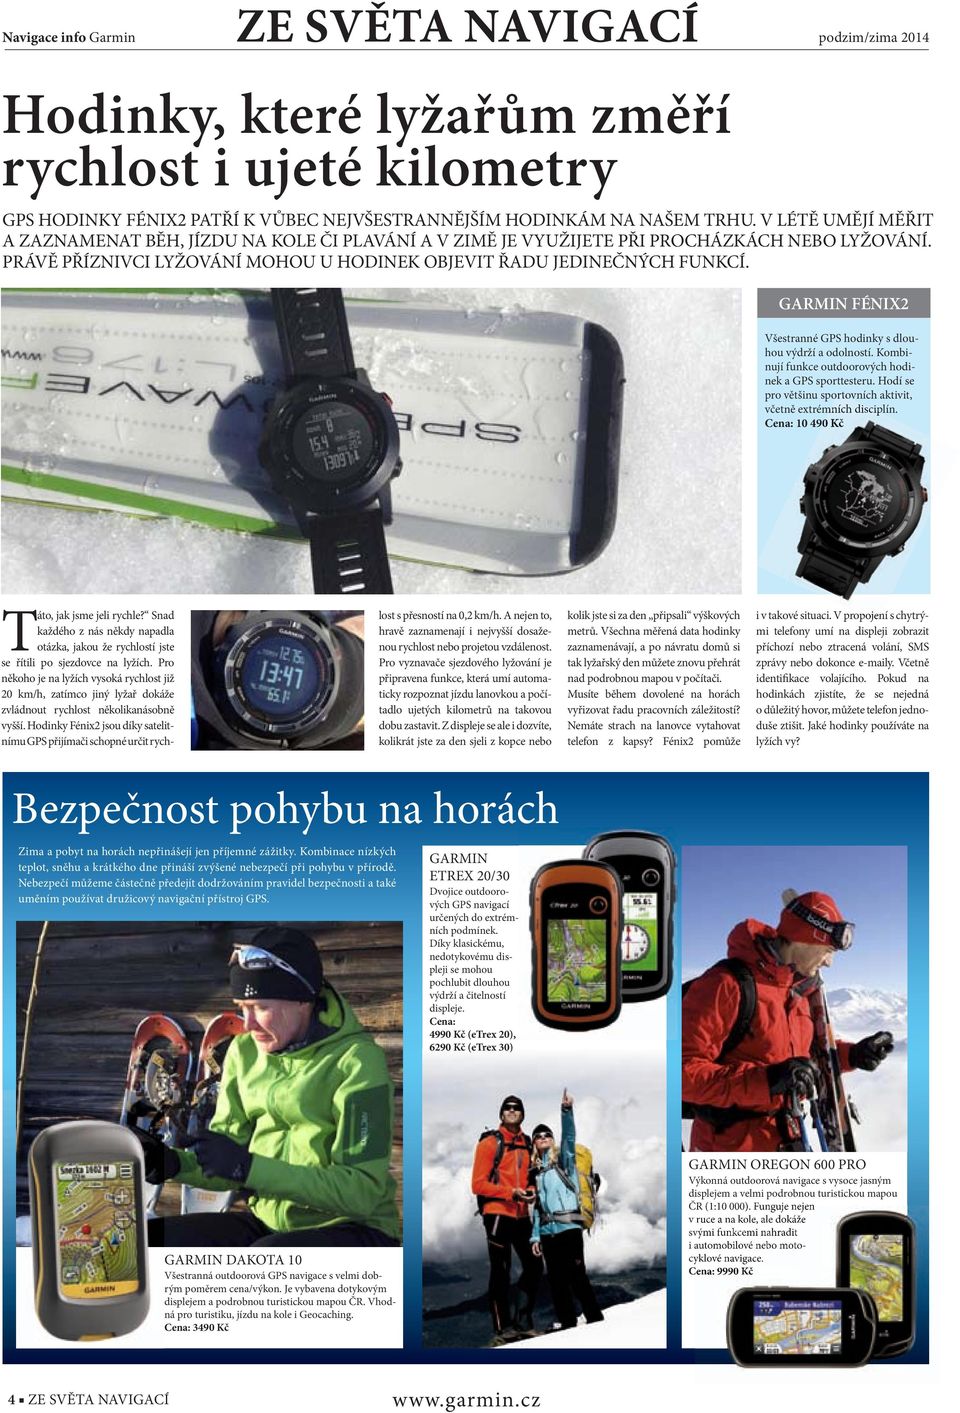 GARMIN FÉNIX2 Všestranné GPS hodinky s dlouhou výdrží a odolností. Kombinují funkce outdoorových hodinek a GPS sporttesteru. Hodí se pro většinu sportovních aktivit, včetně extrémních disciplín.